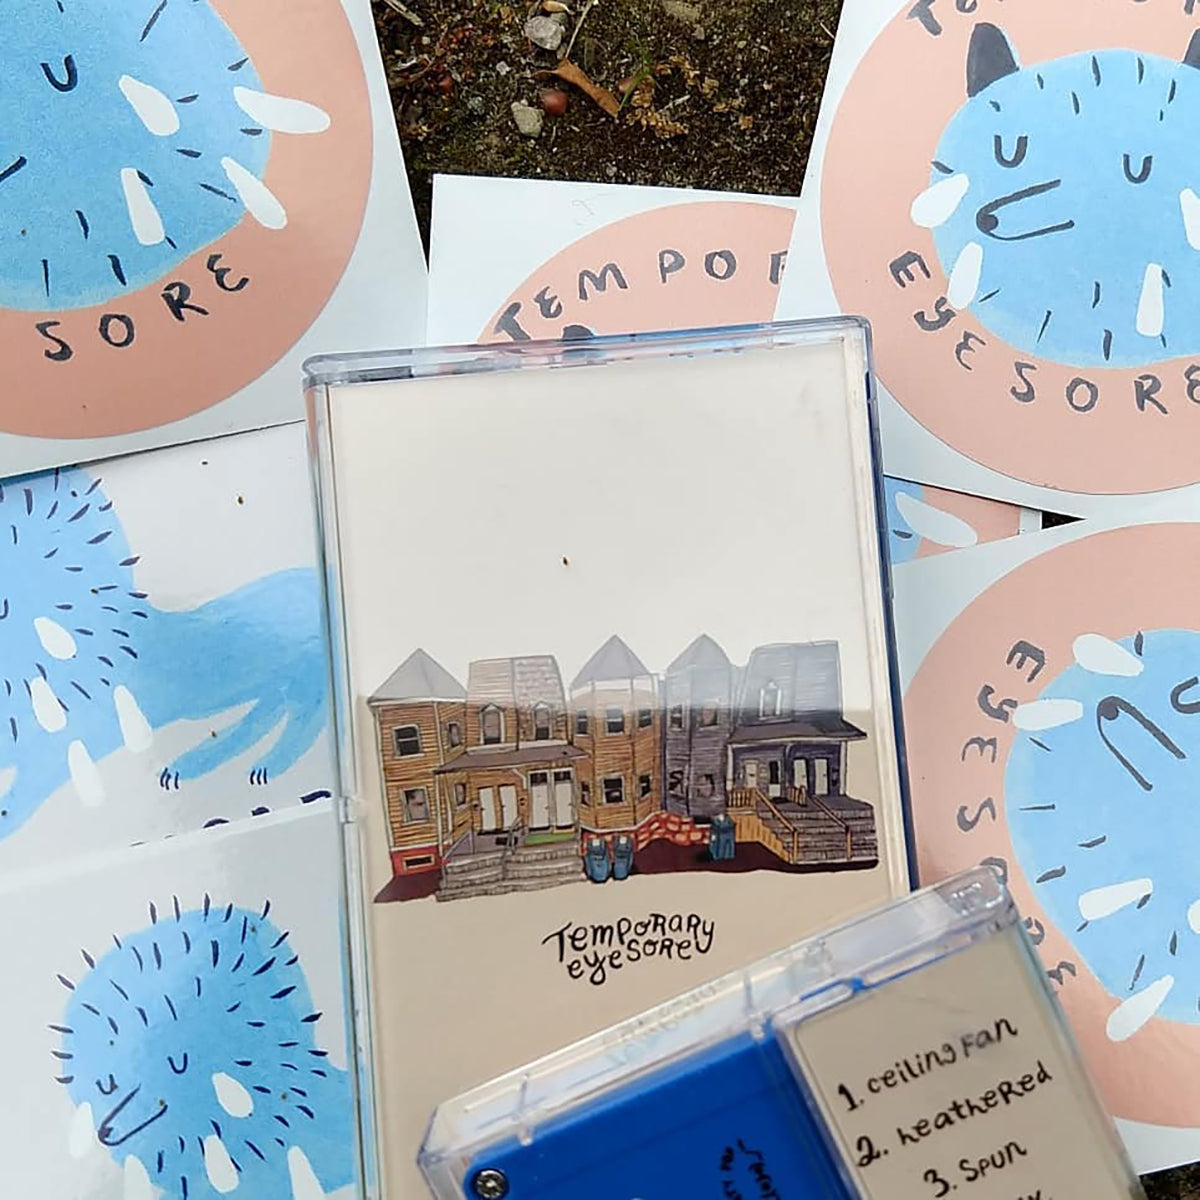 TEMPORARY EYESORE "Temporary Eyesore" cassette tape